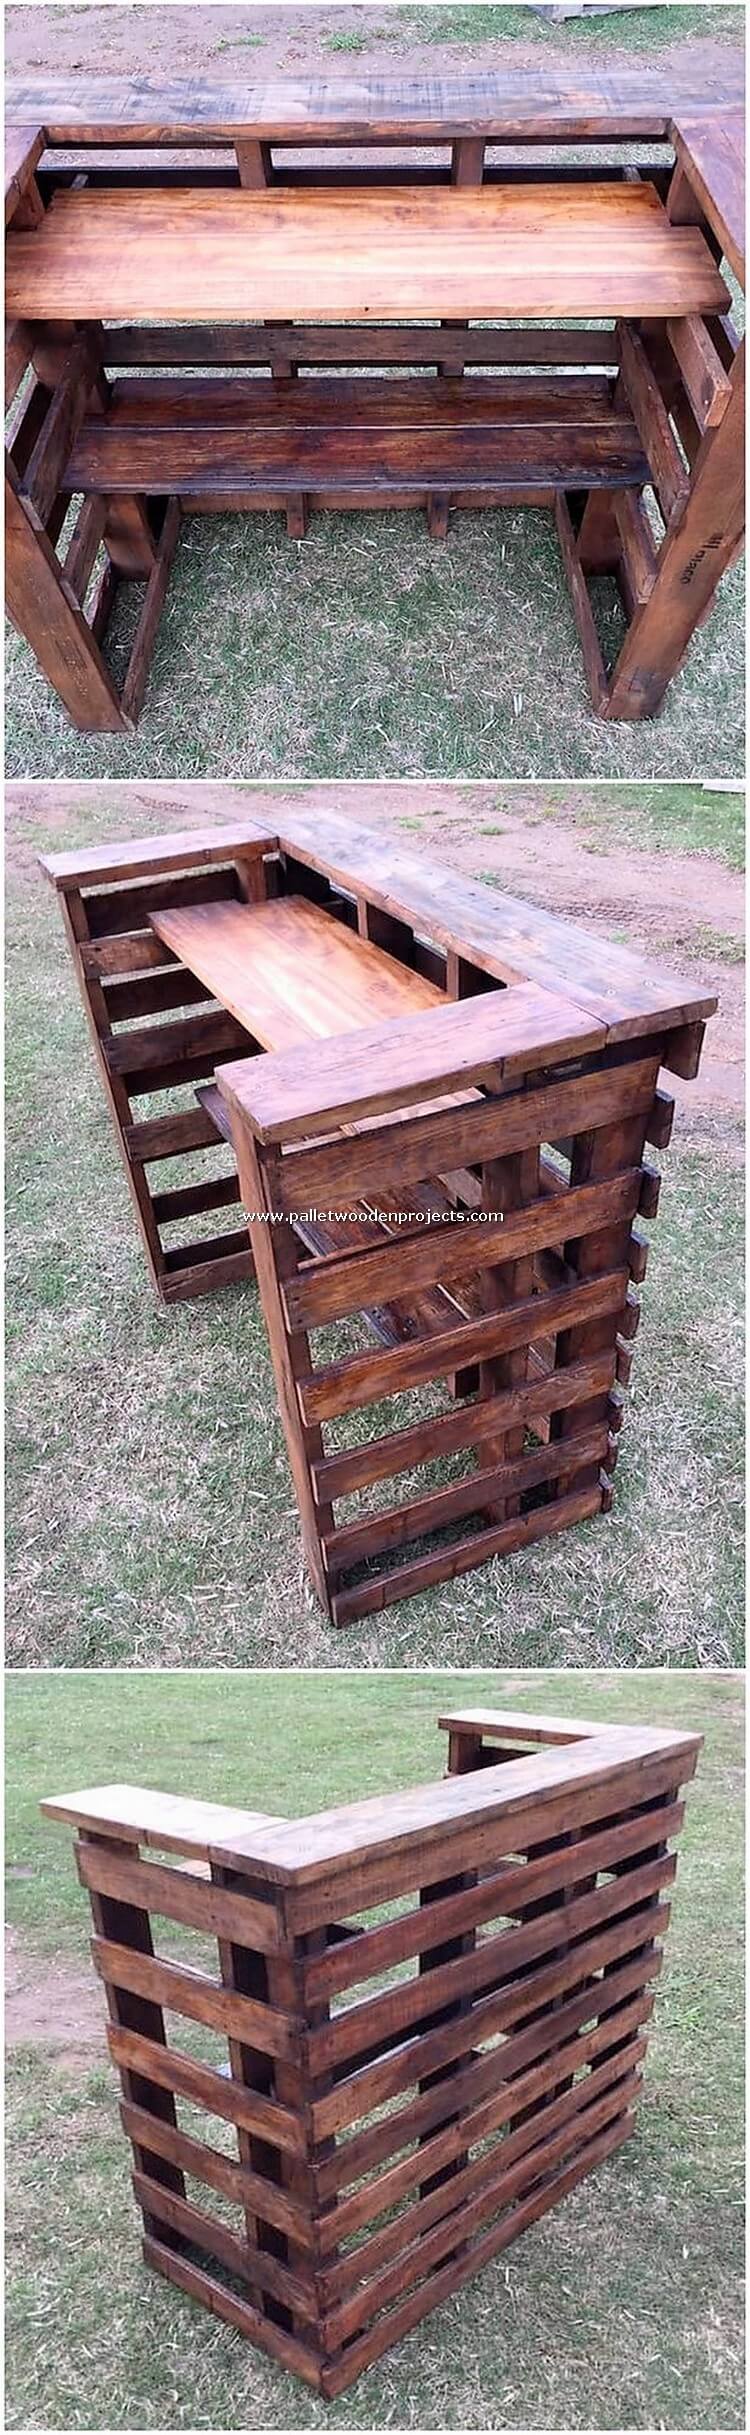 Mesa de mostrador para palets de madera